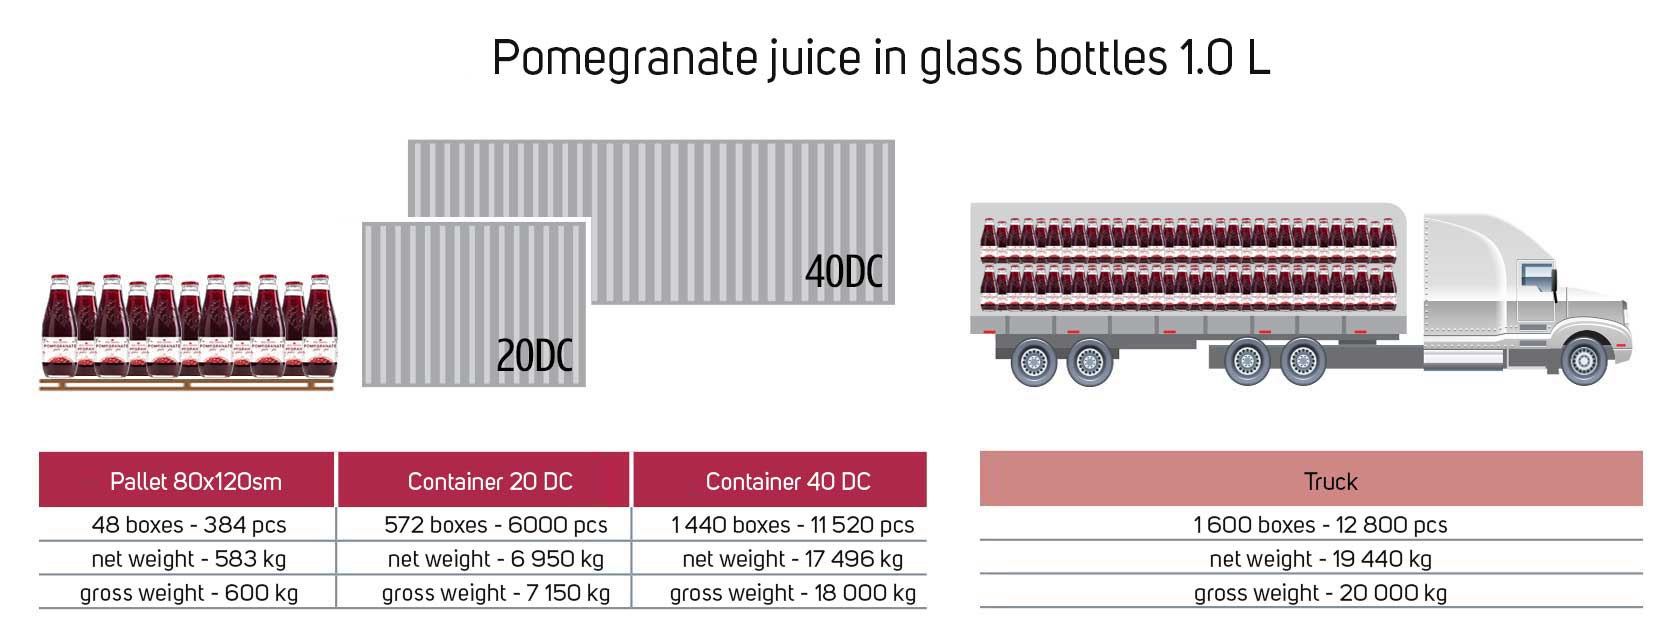 Pomegranate-juice-glass-bottles